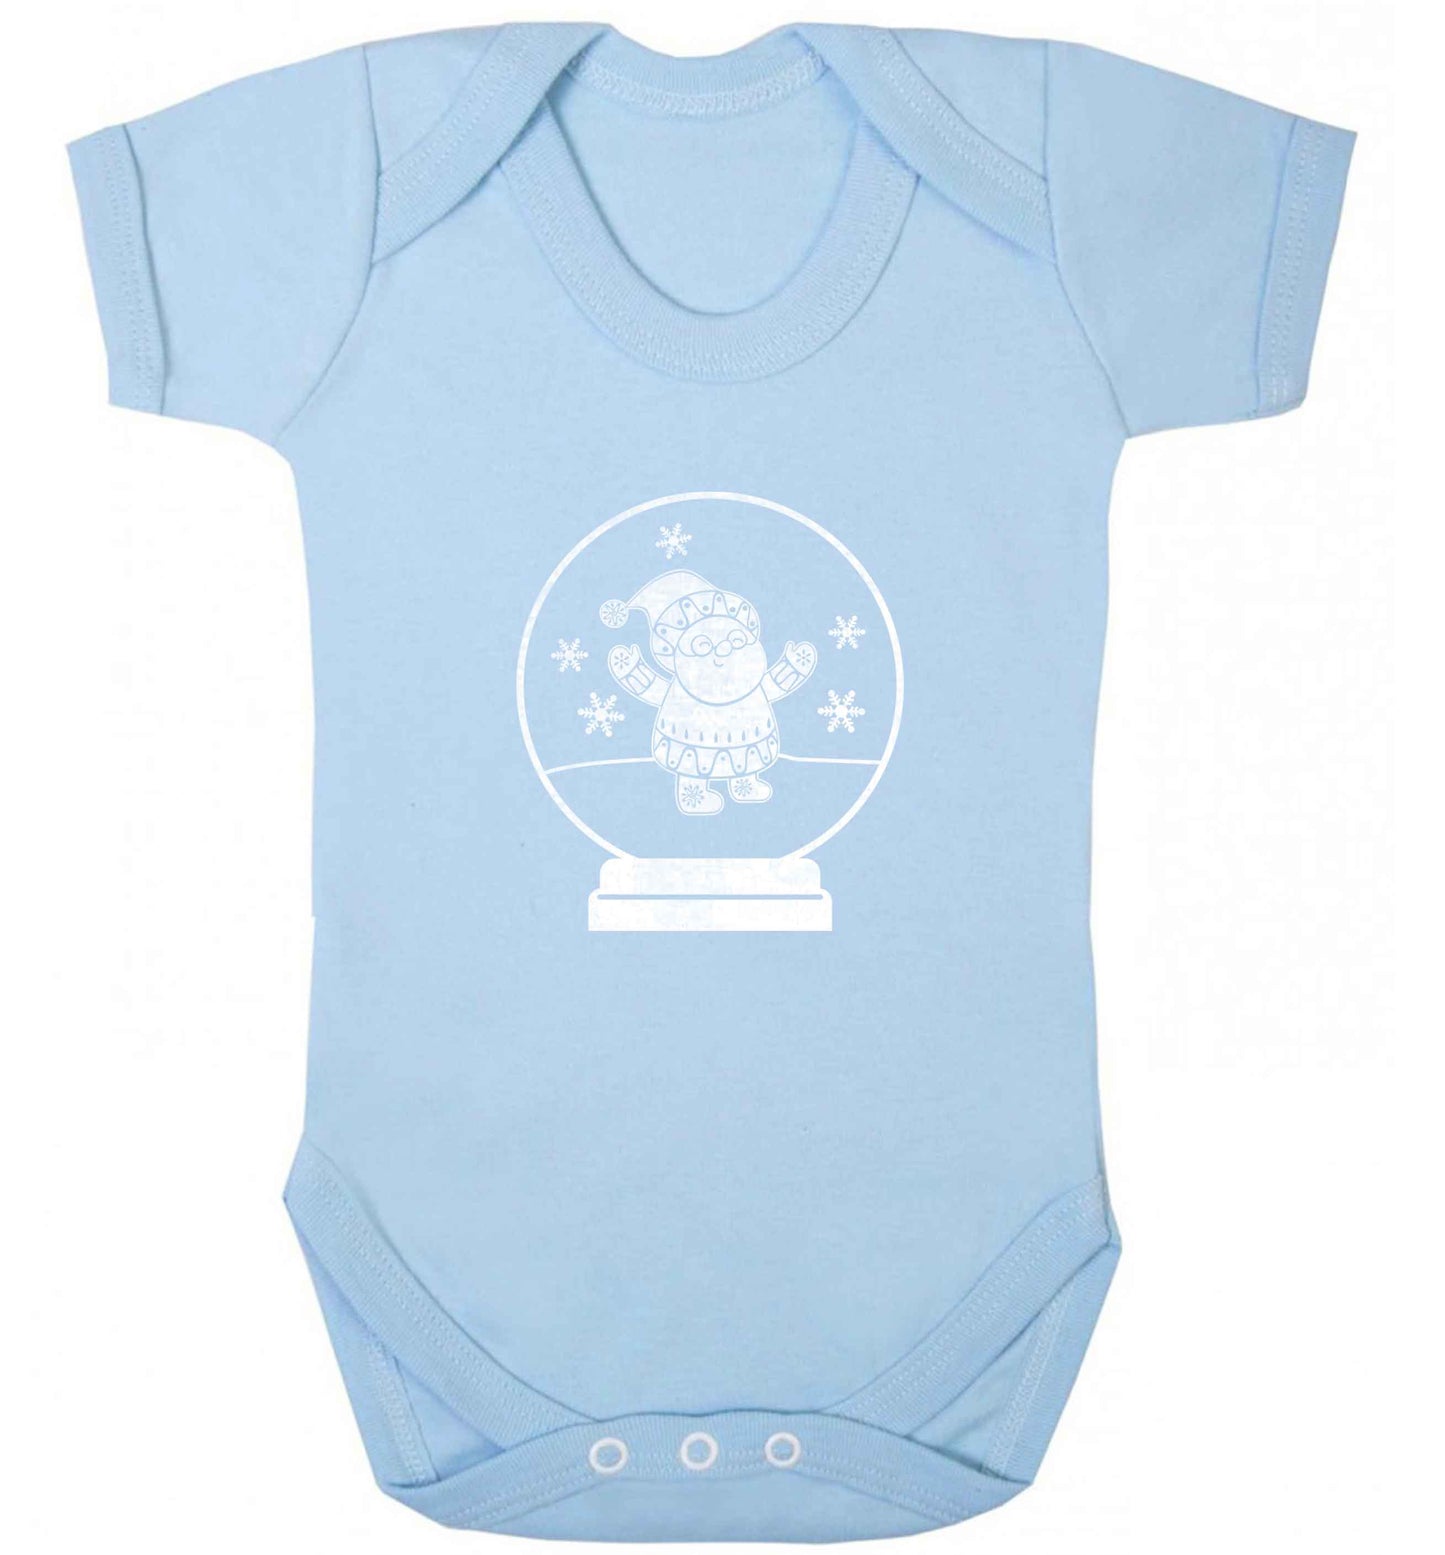 Santa snowglobe baby vest pale blue 18-24 months